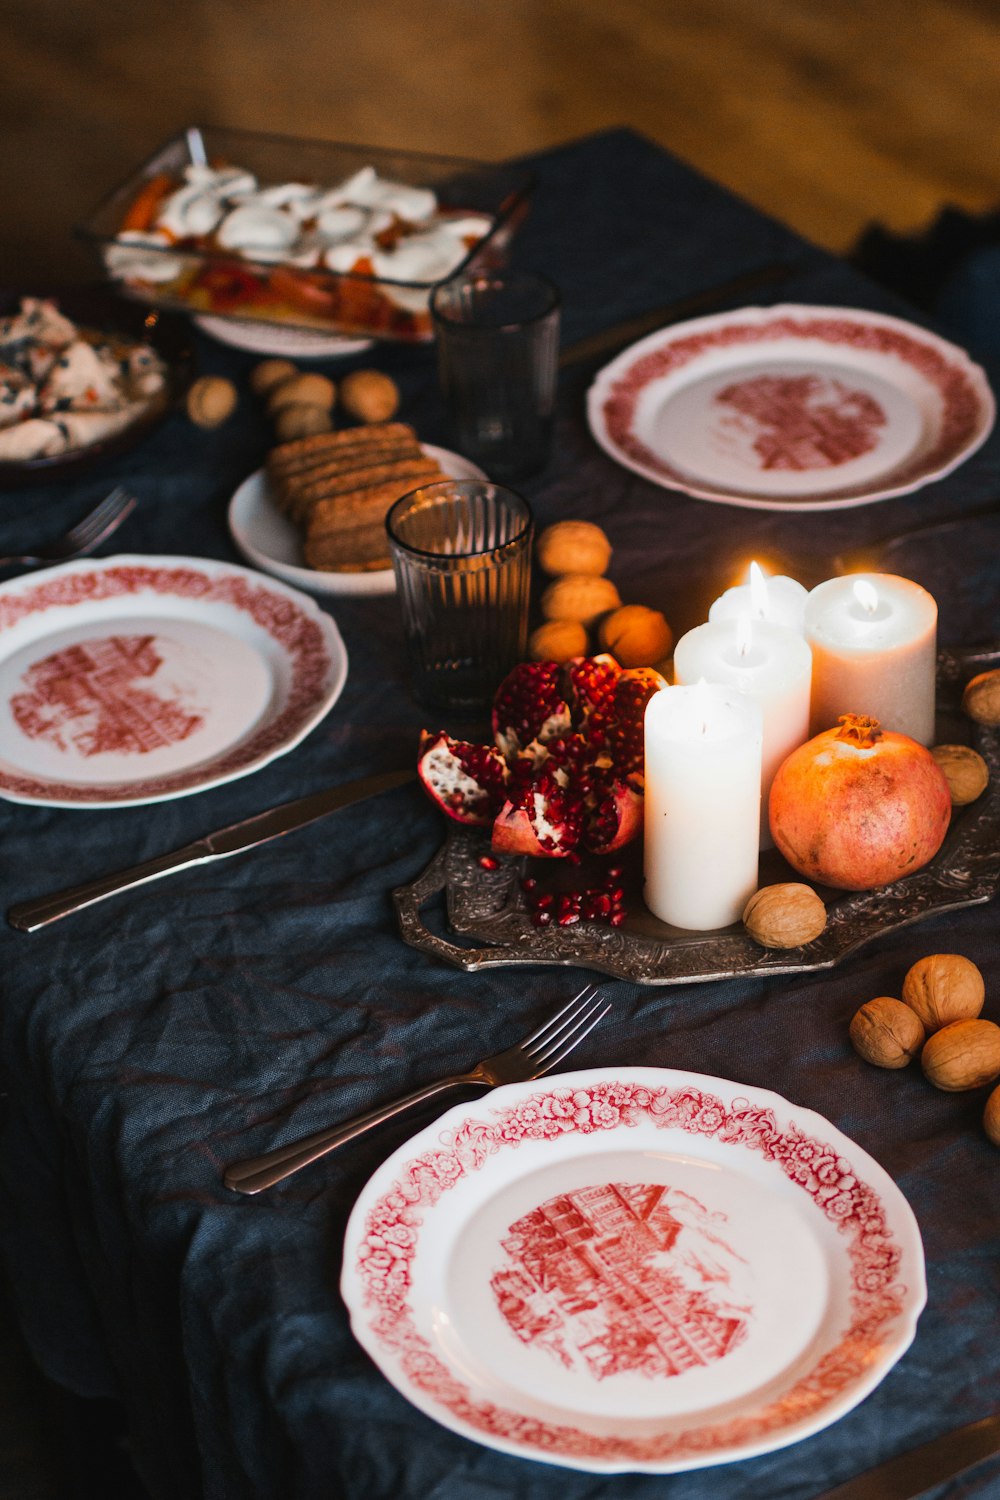 Plato de cerámica blanca y roja con tenedor de acero inoxidable junto a galletas marrones y velas blancas